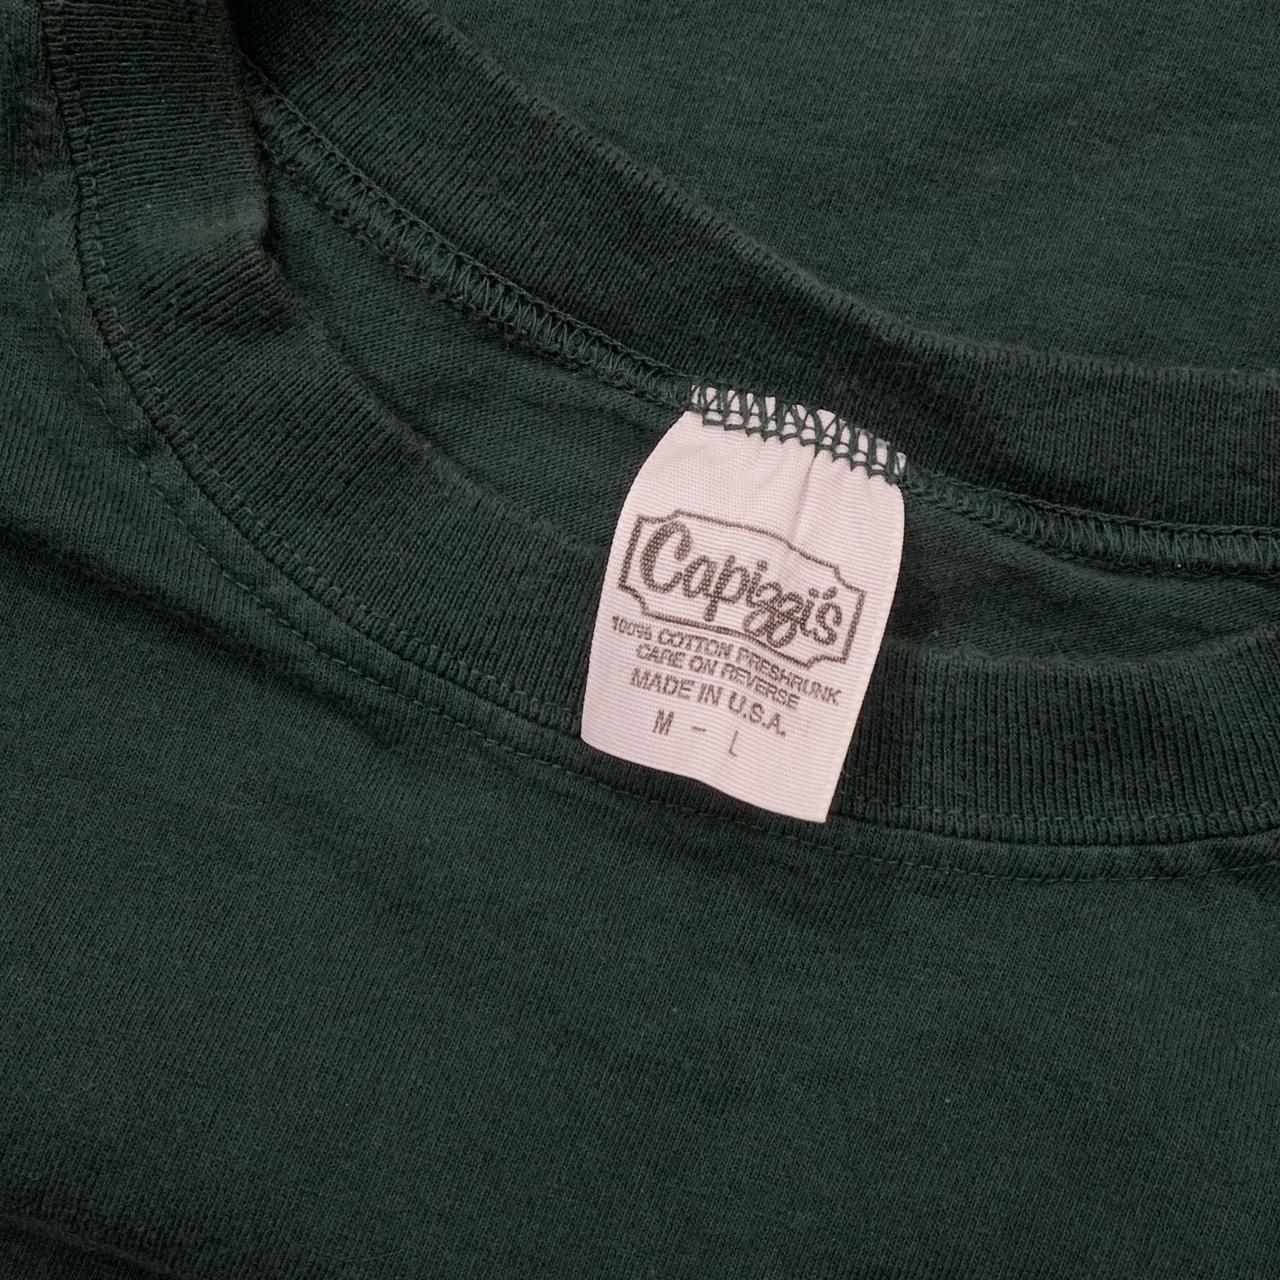 Forest green short-sleeved crewneck tee t-shirt - Depop